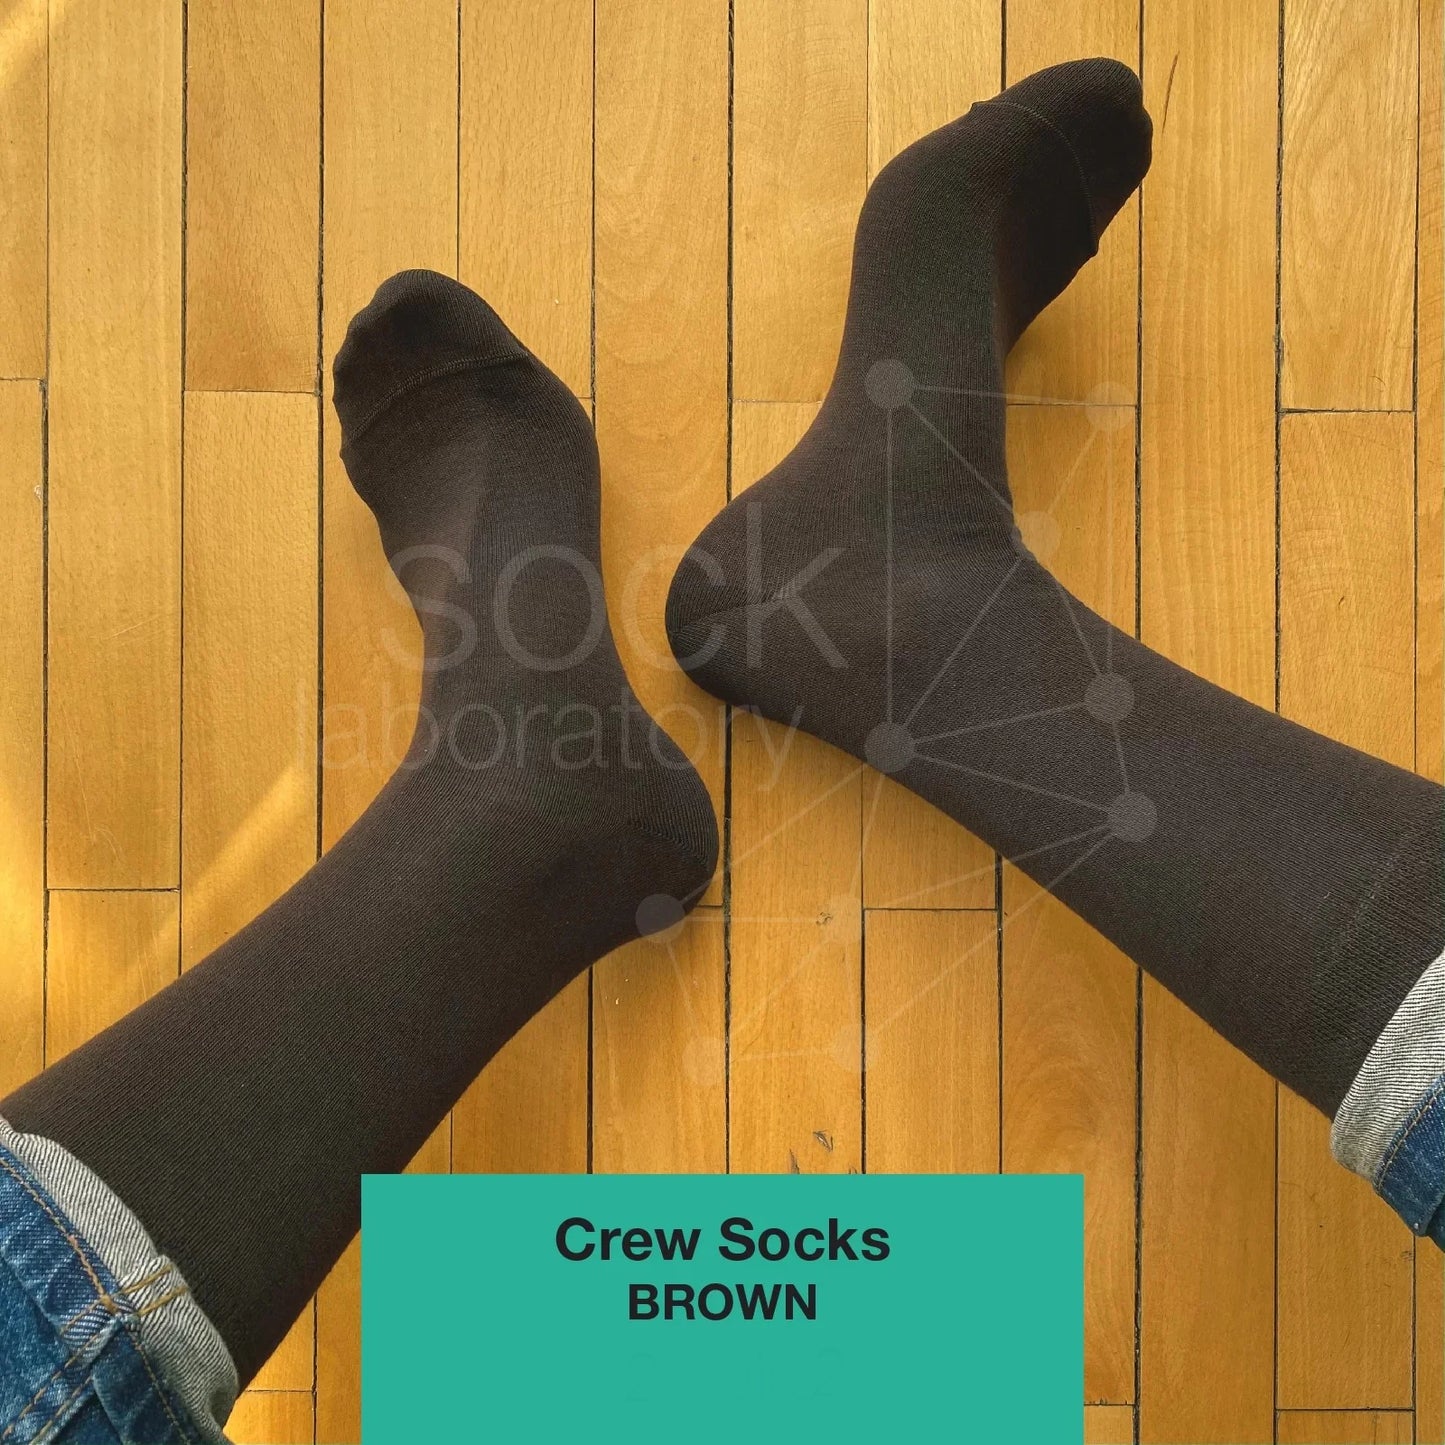 CREW SOCKS - Set of 3 / Black / Navy / Brown